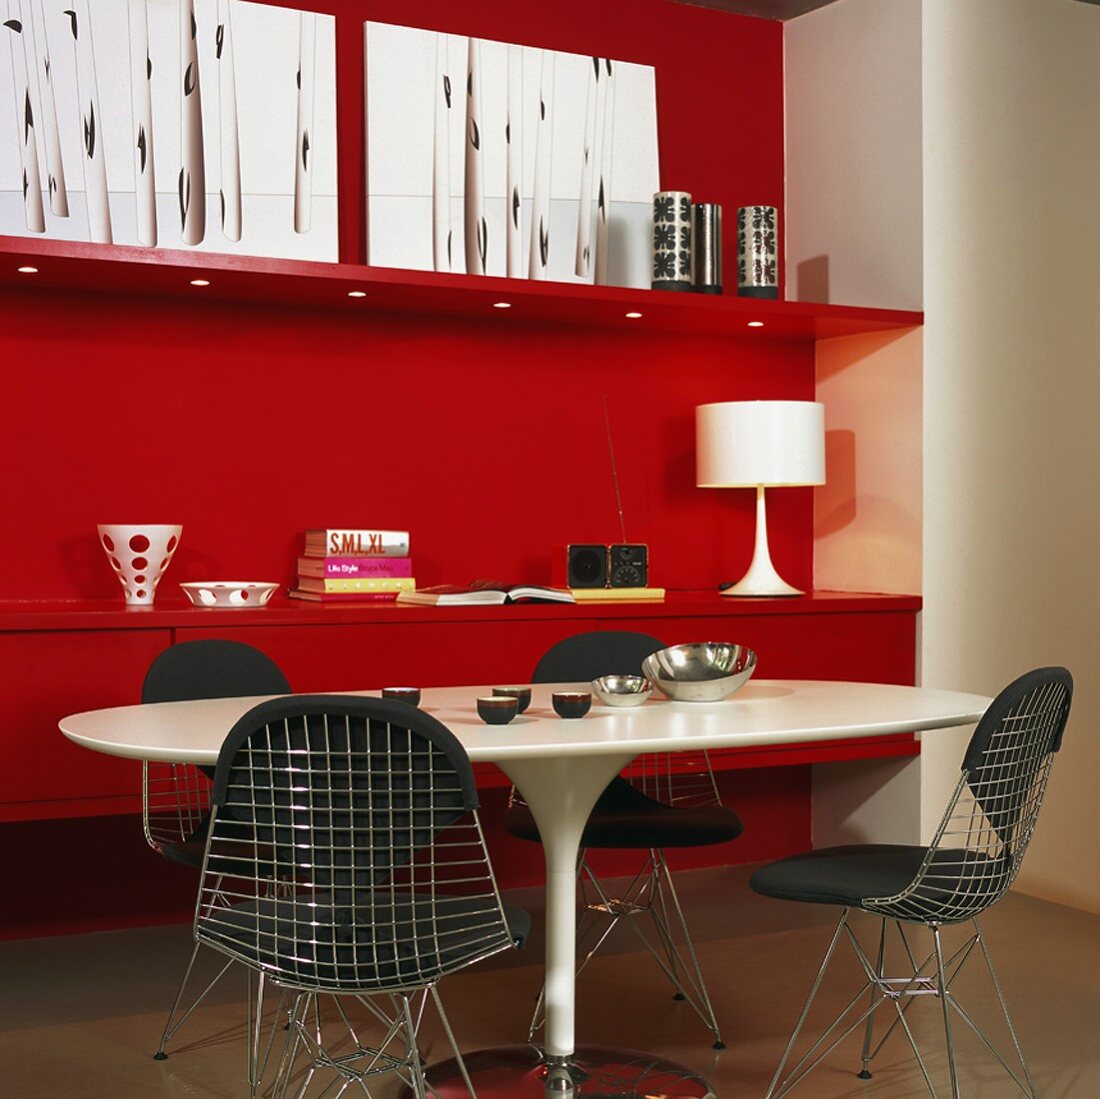 Rote Wand mit rotem Sideboard; davor ein weisser Tisch mit schwarzgepolsterten Metallstühlen